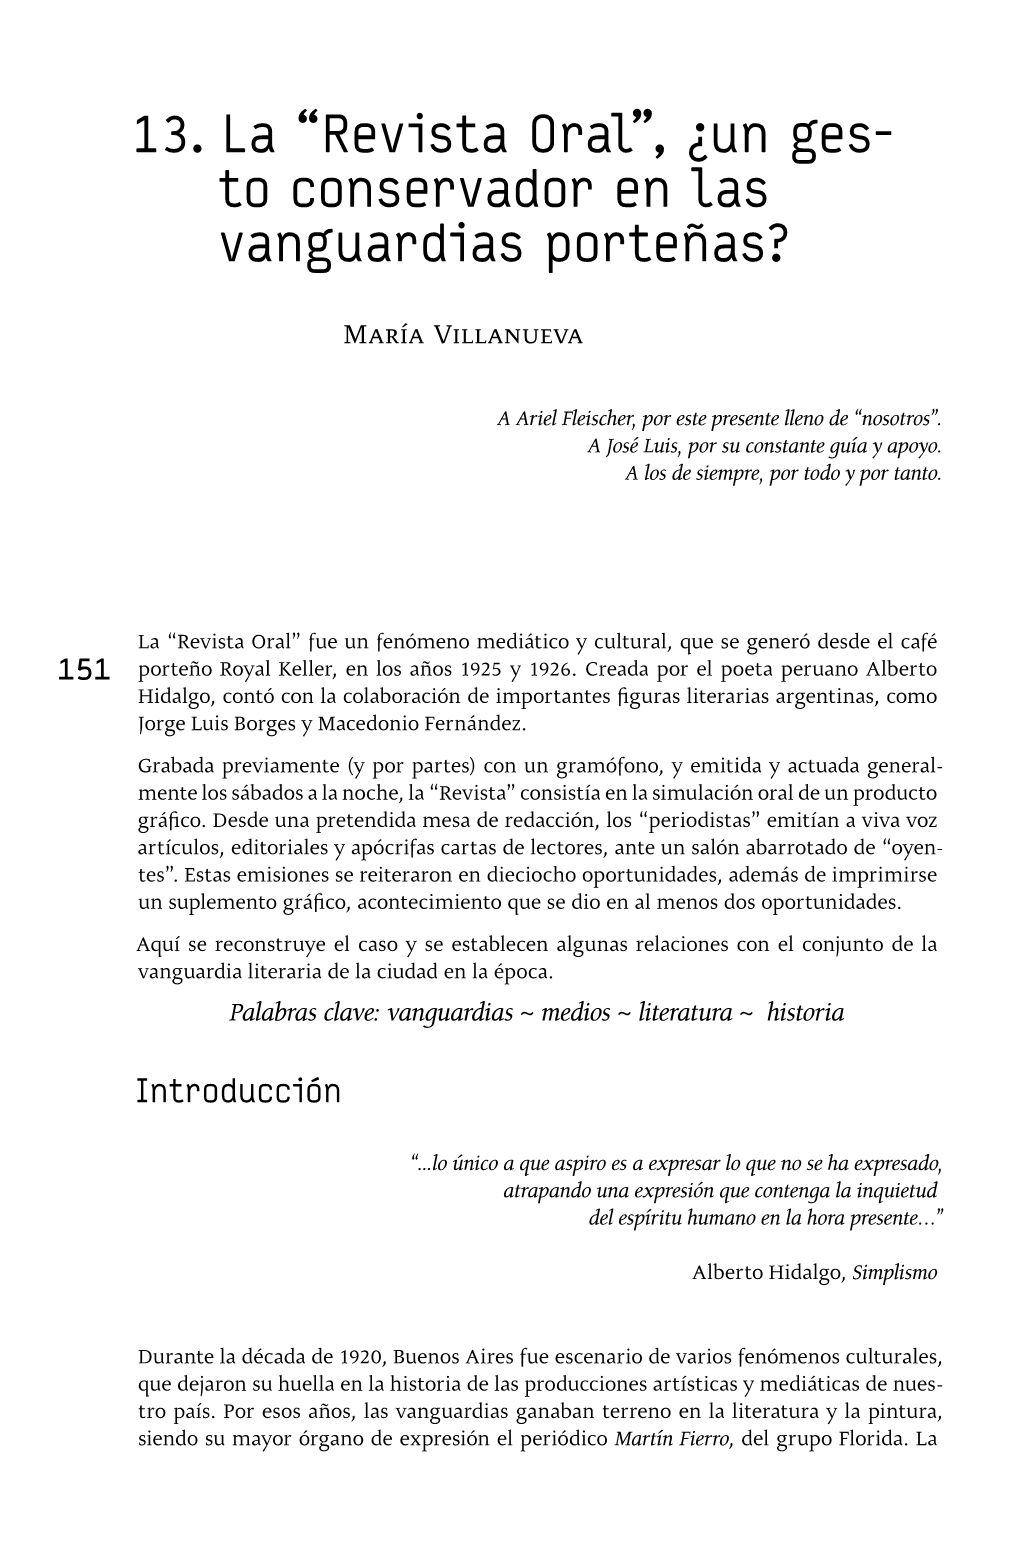 13. La “Revista Oral”, ¿Un Ges- to Conservador En Las Vanguardias Porteñas?